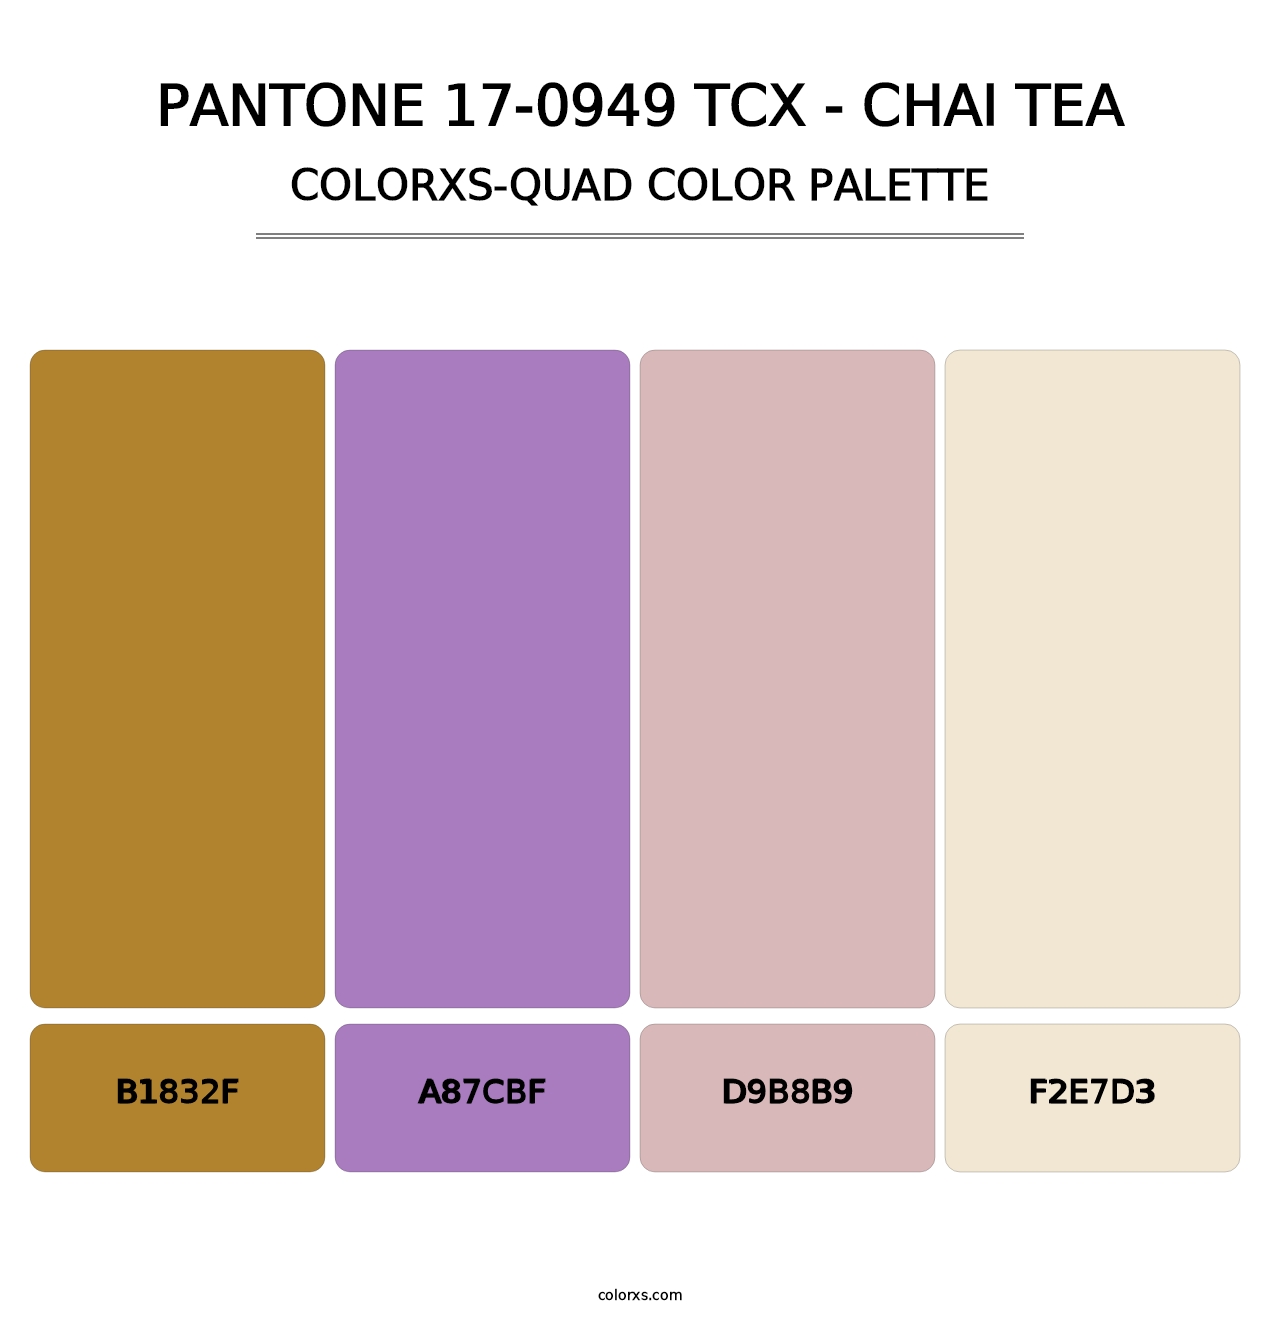 PANTONE 17-0949 TCX - Chai Tea - Colorxs Quad Palette